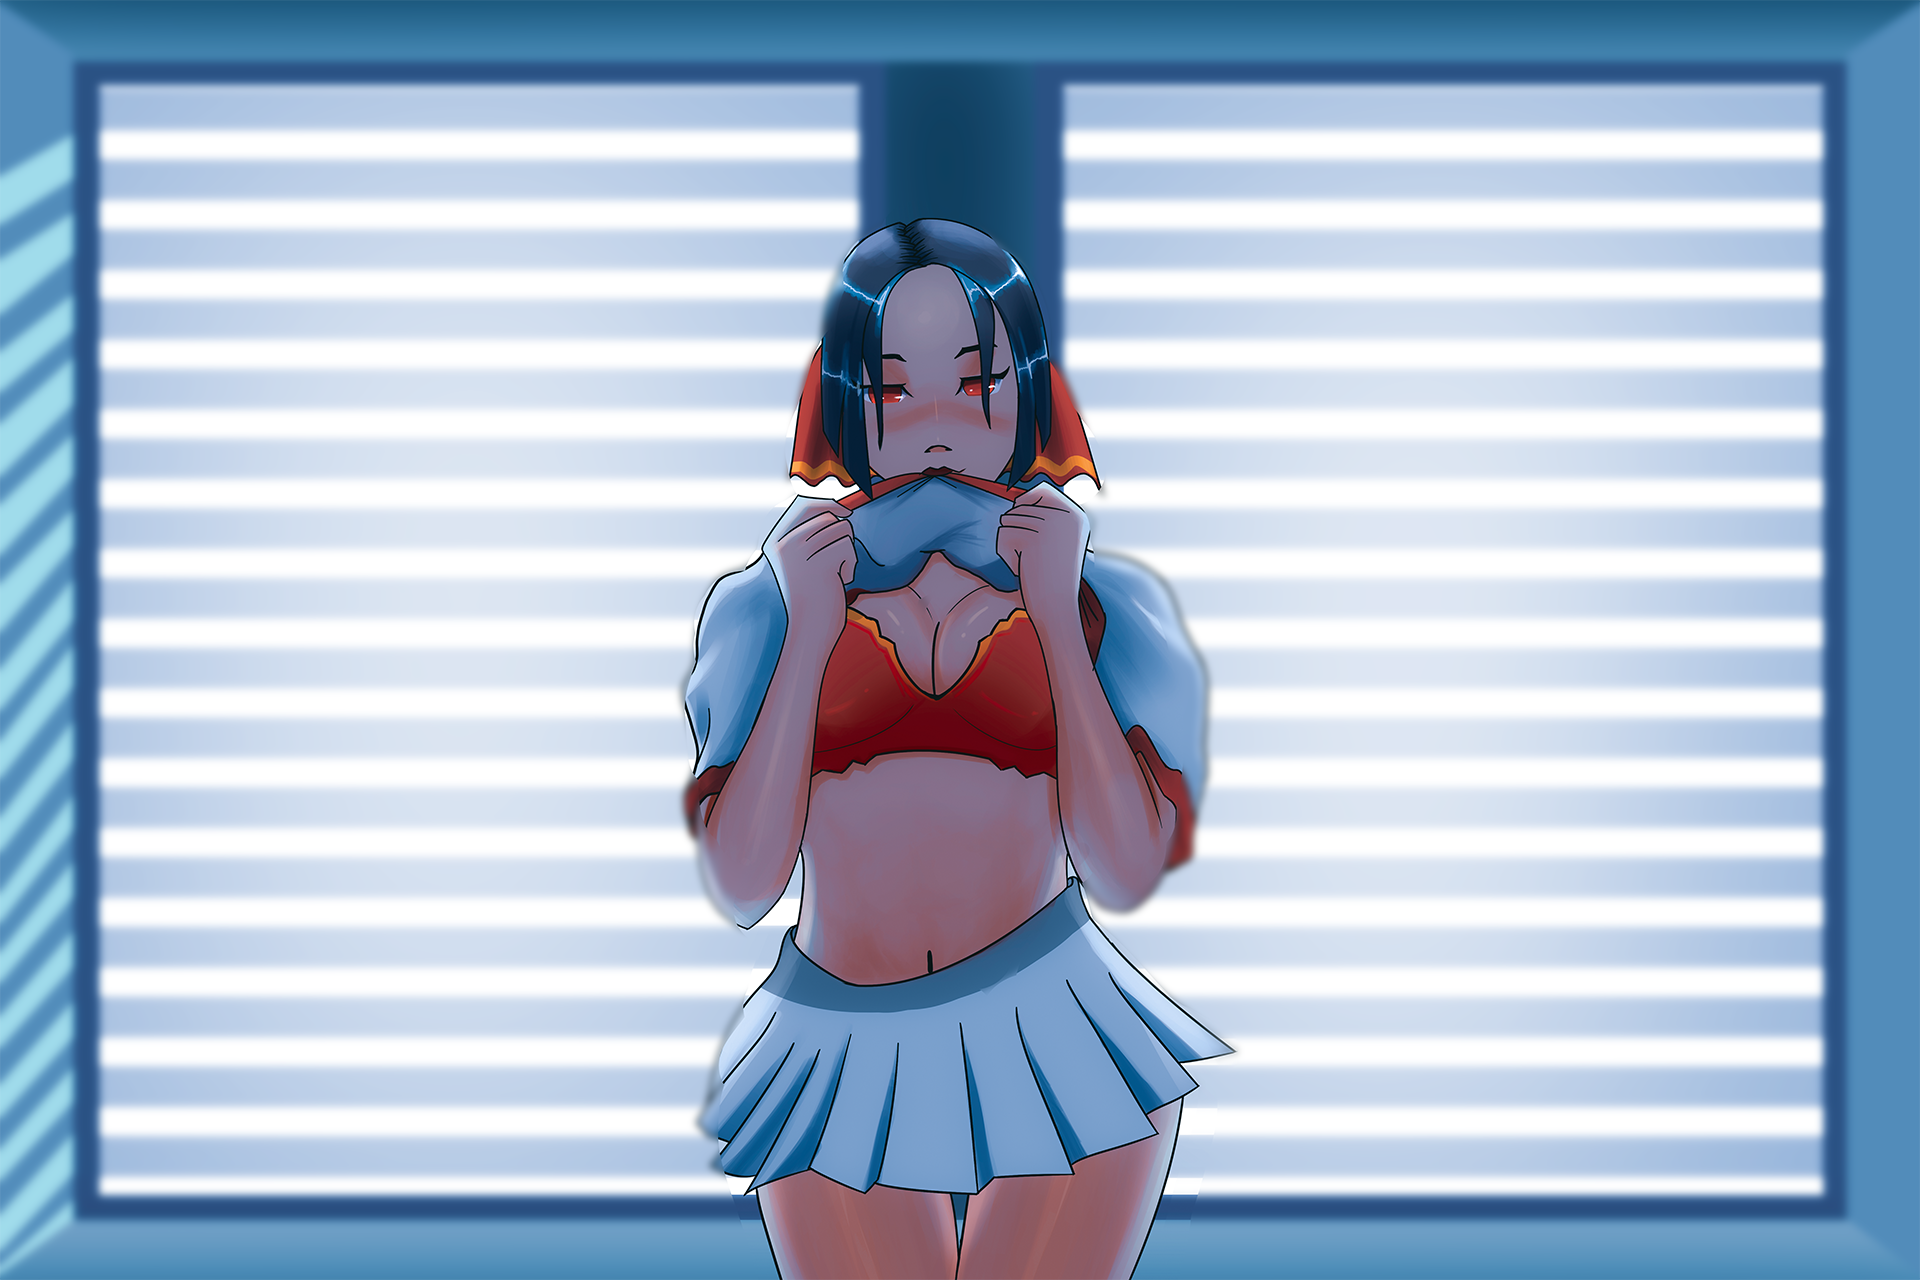 Anime 1920x1280 blinds schoolgirl Kaguya Shinomiya Kaguya-Sama: Love is War red bikini bra short hair blushing school uniform